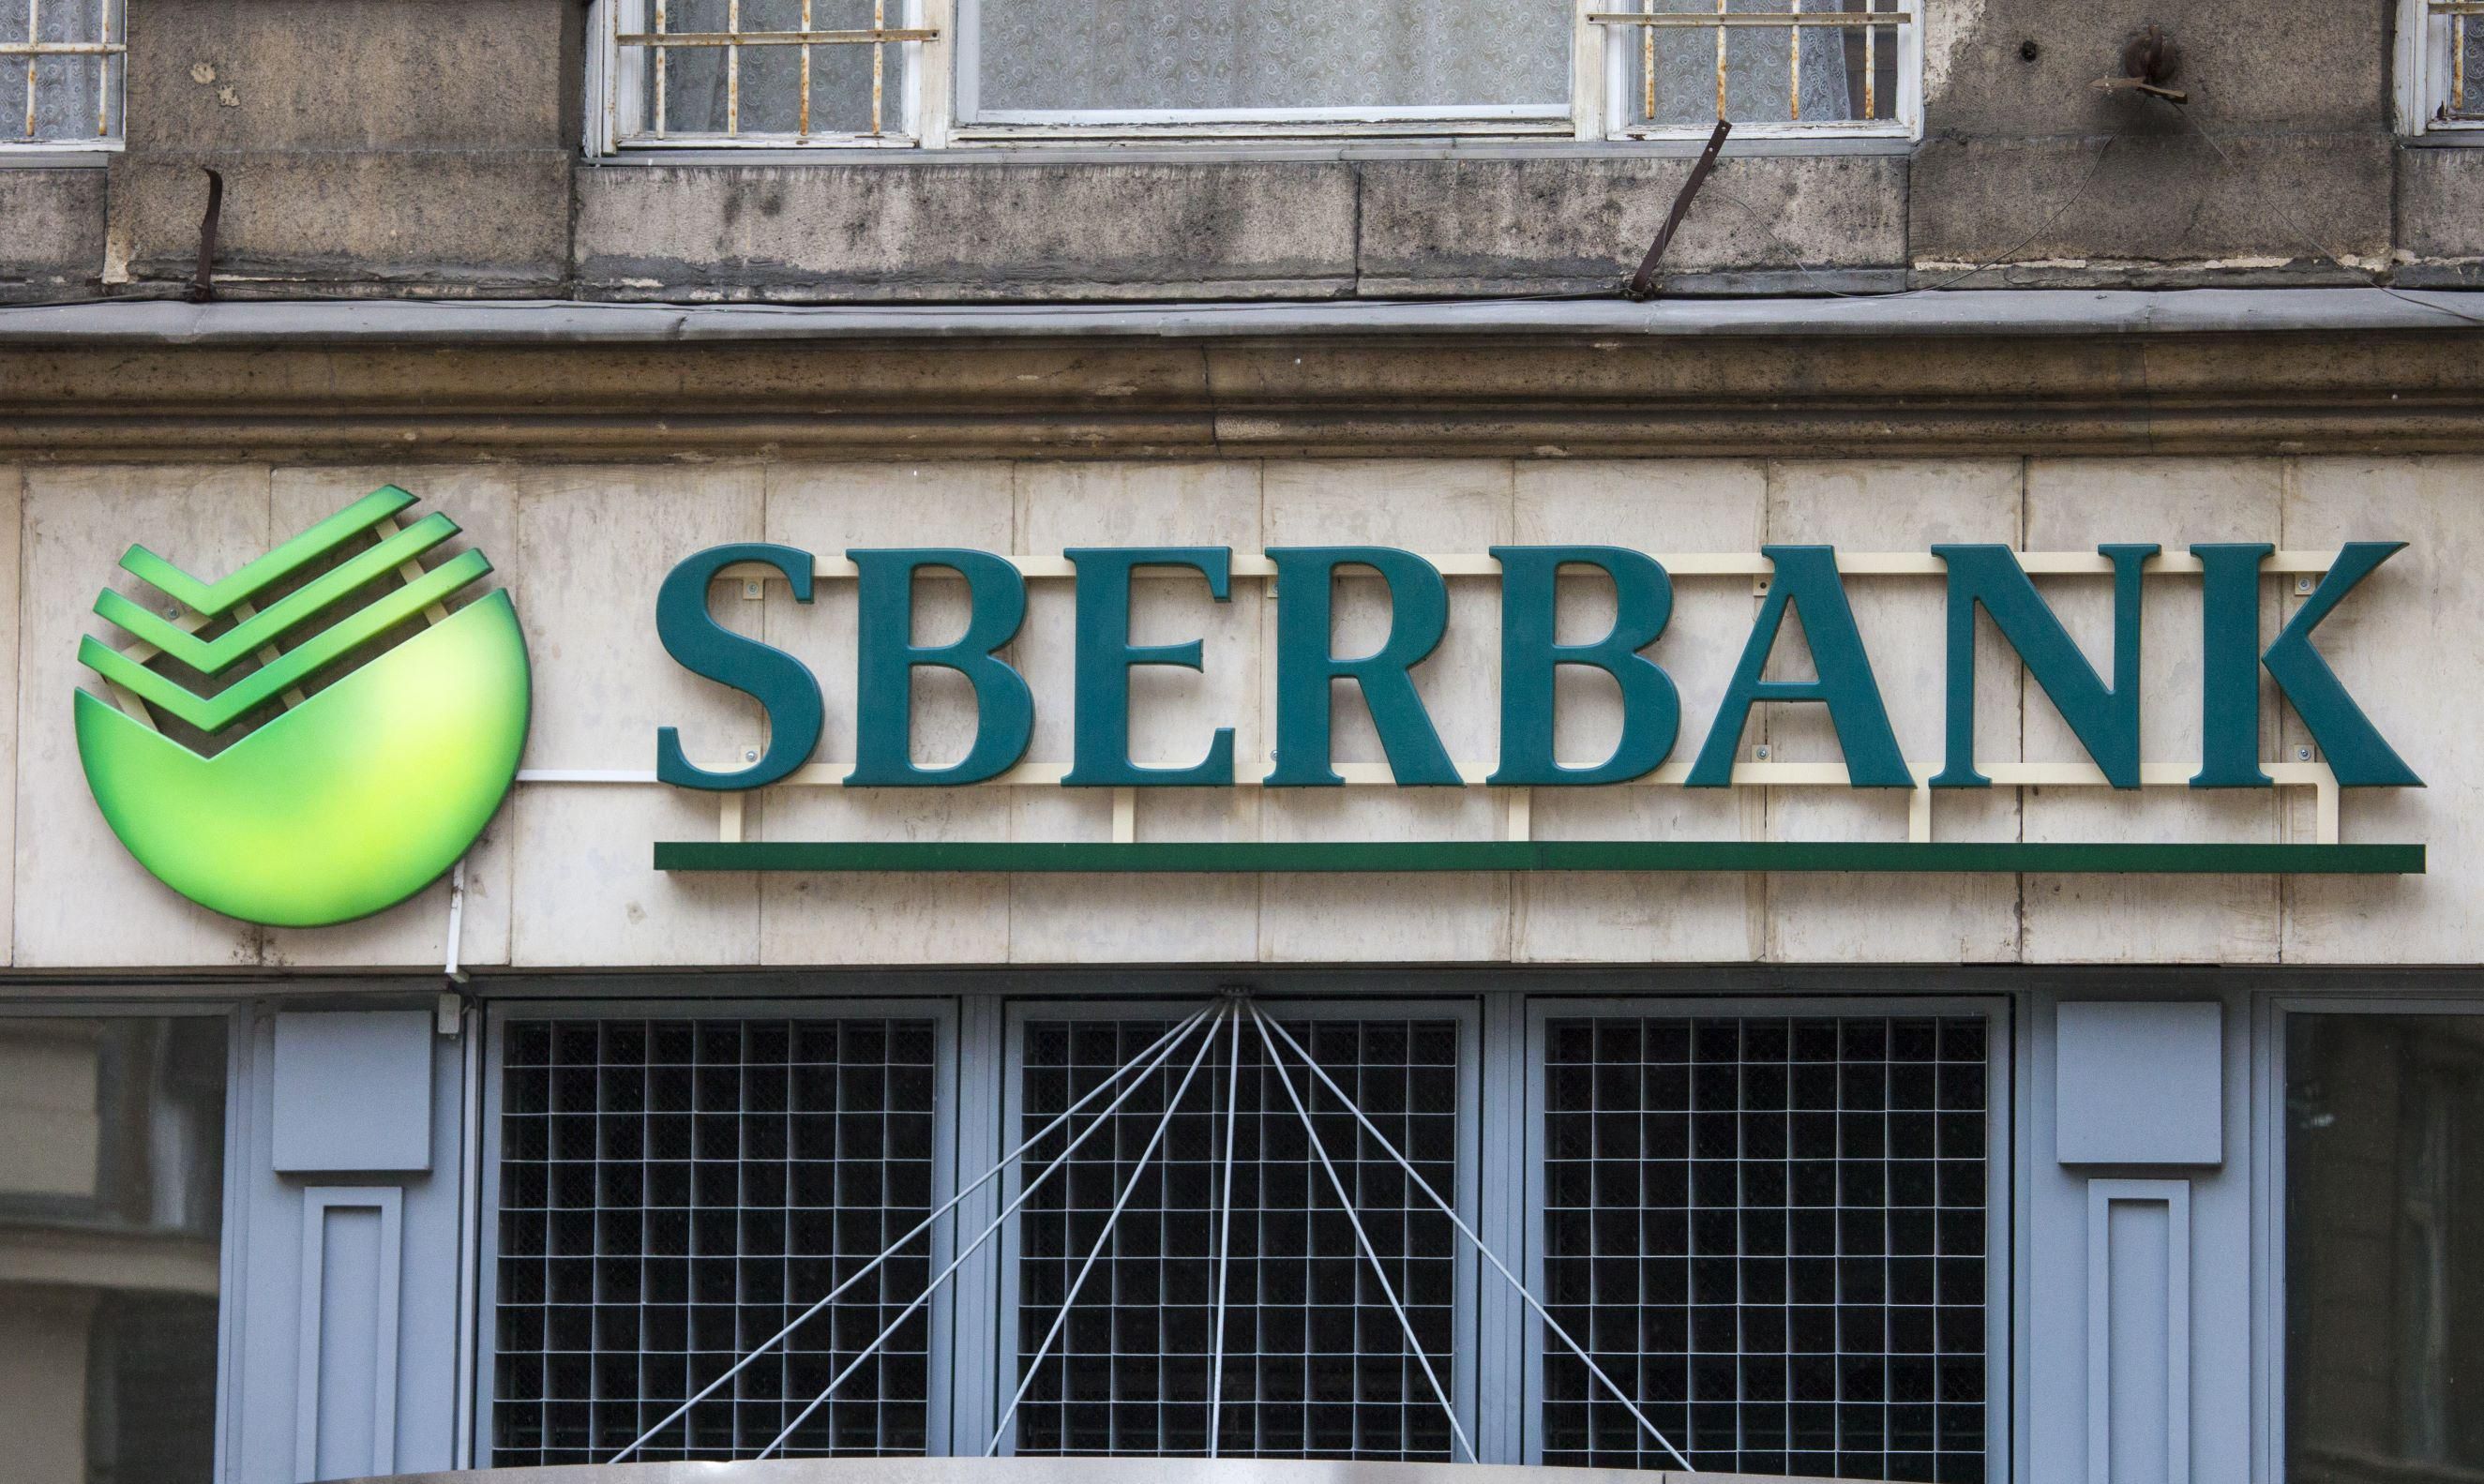 Válaszok a Sberbank ügyfeleinek legfontosabb kérdéseire